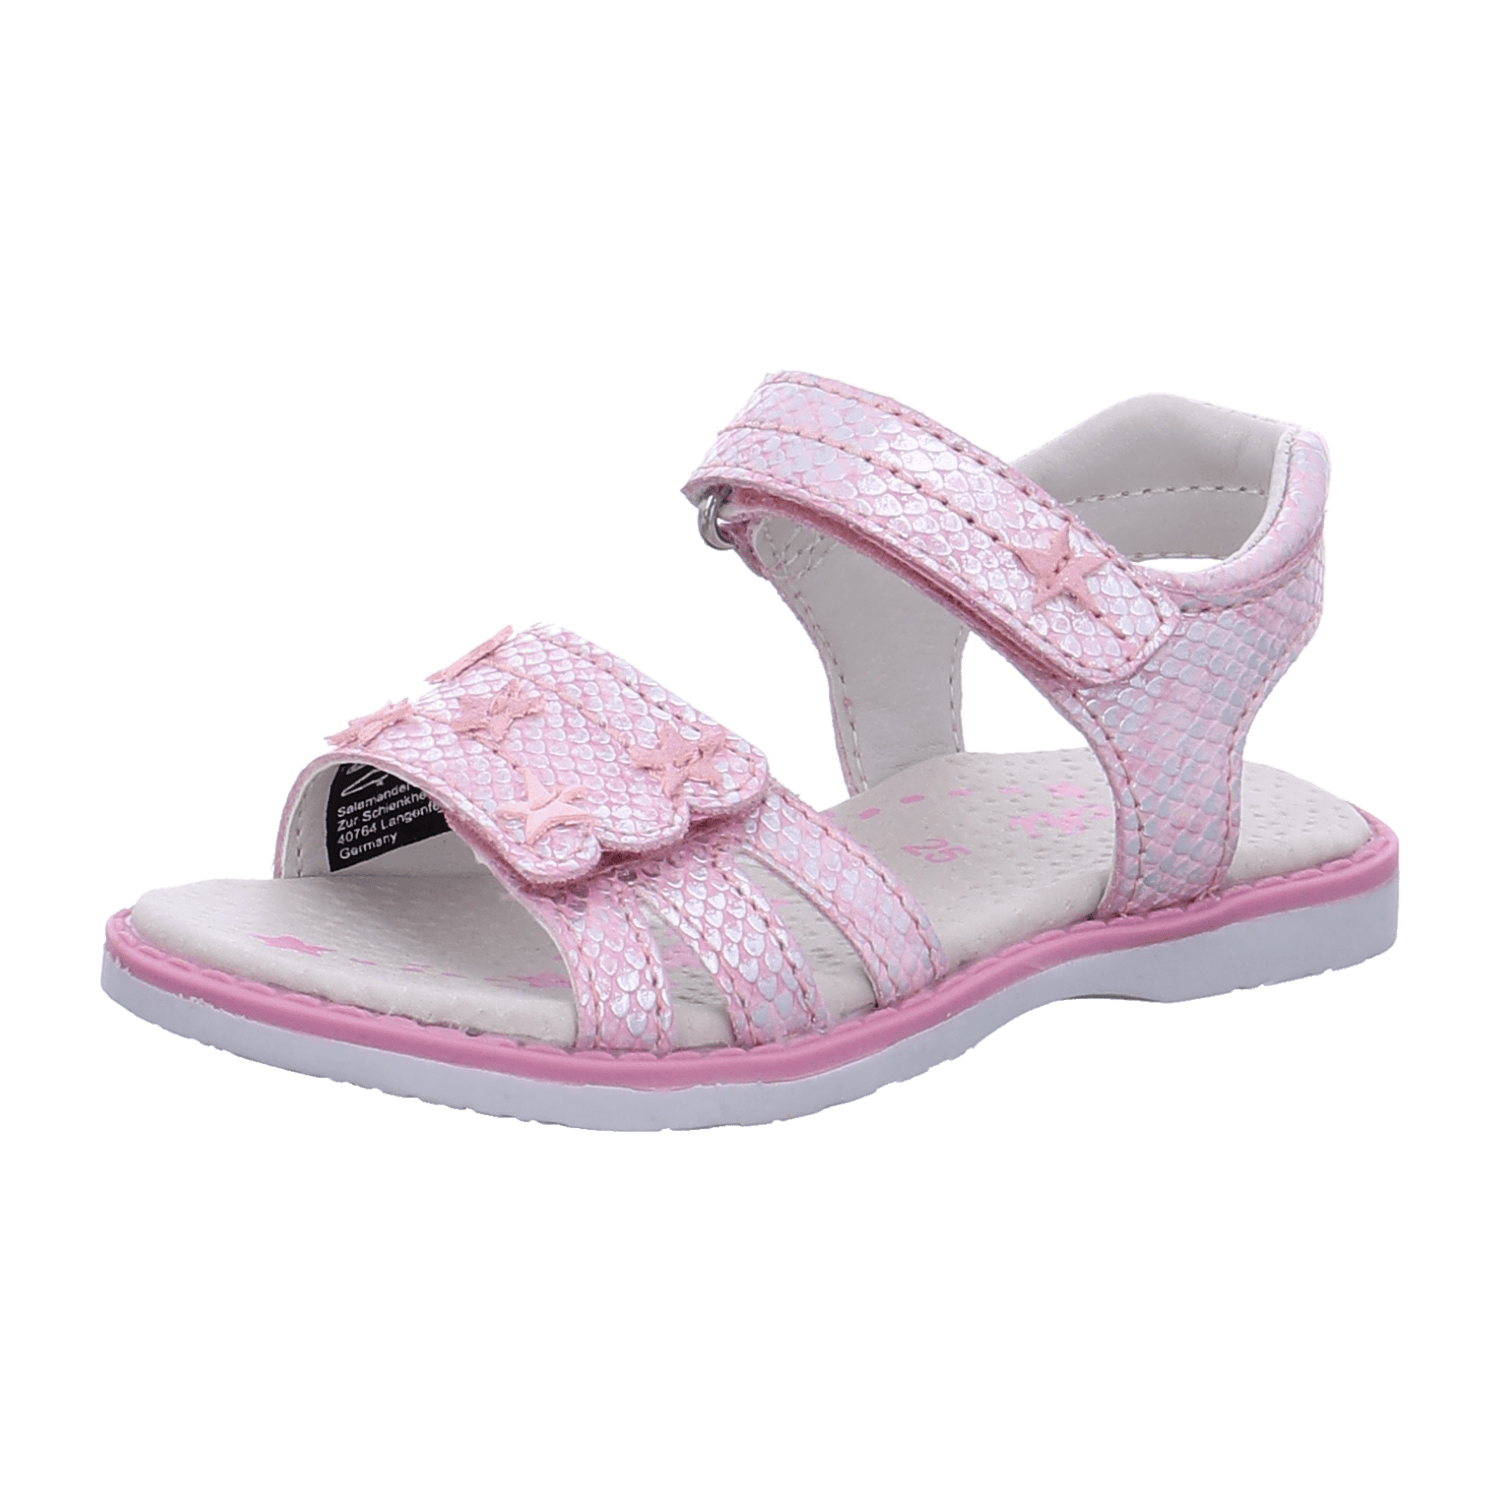 Lurchi Kinder Sandalen für Mädchen kaufen | Riemchensandalen